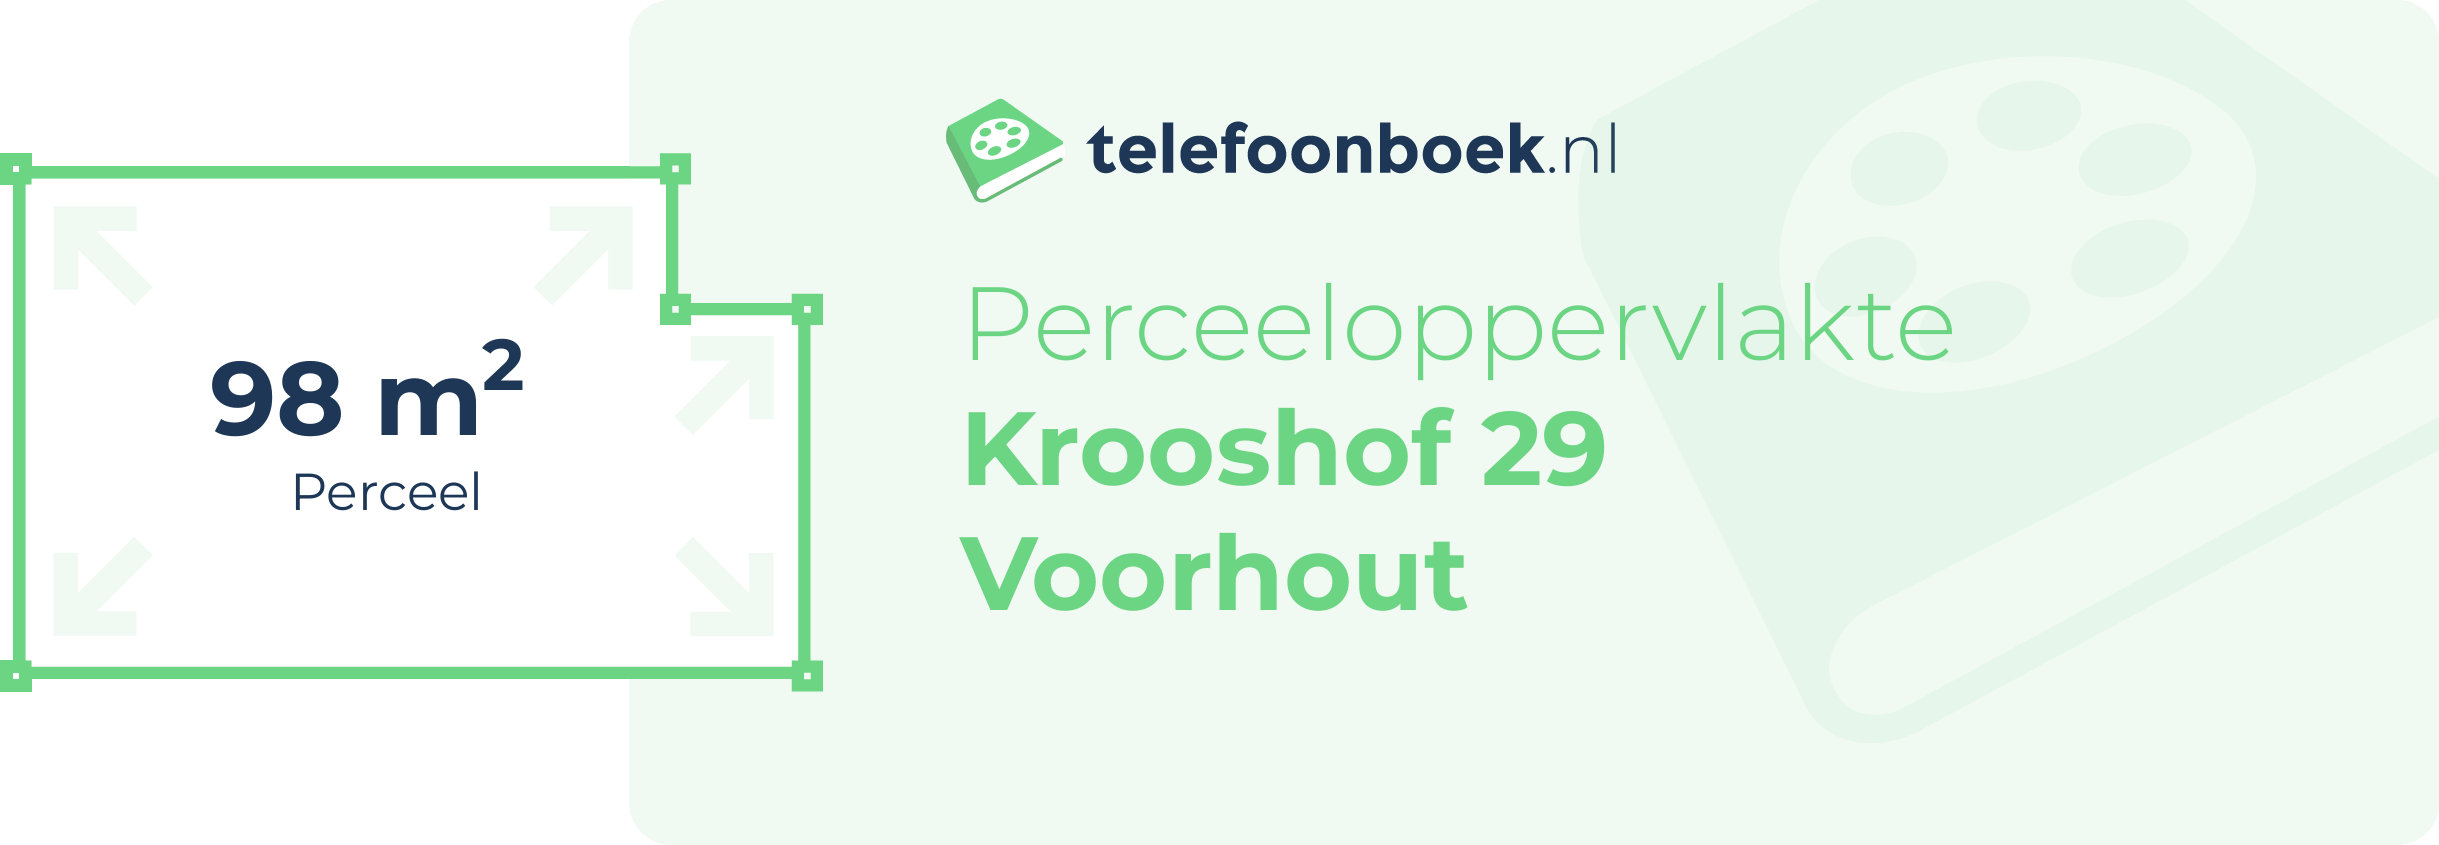 Perceeloppervlakte Krooshof 29 Voorhout